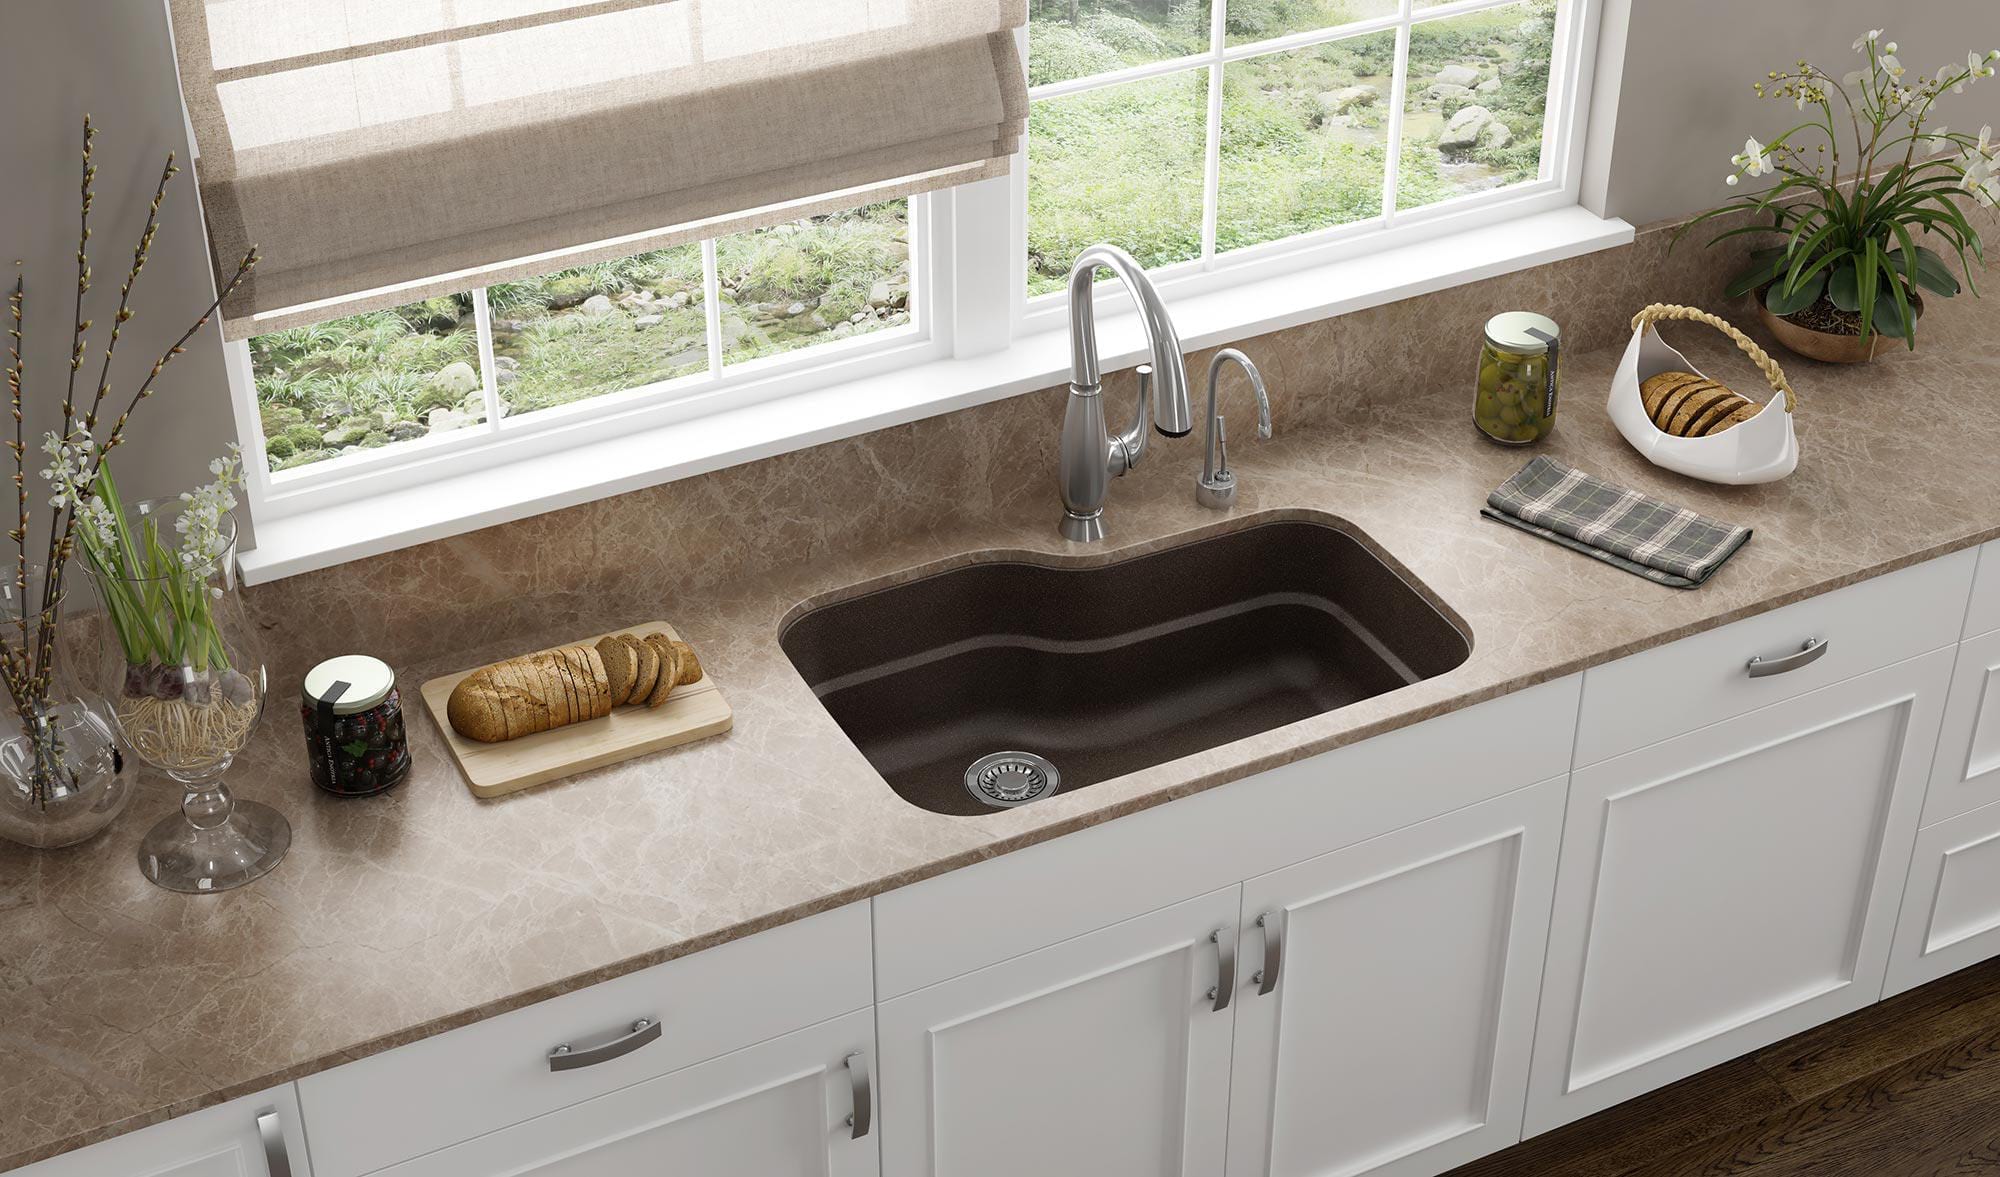 franke undermount granite kitchen sink